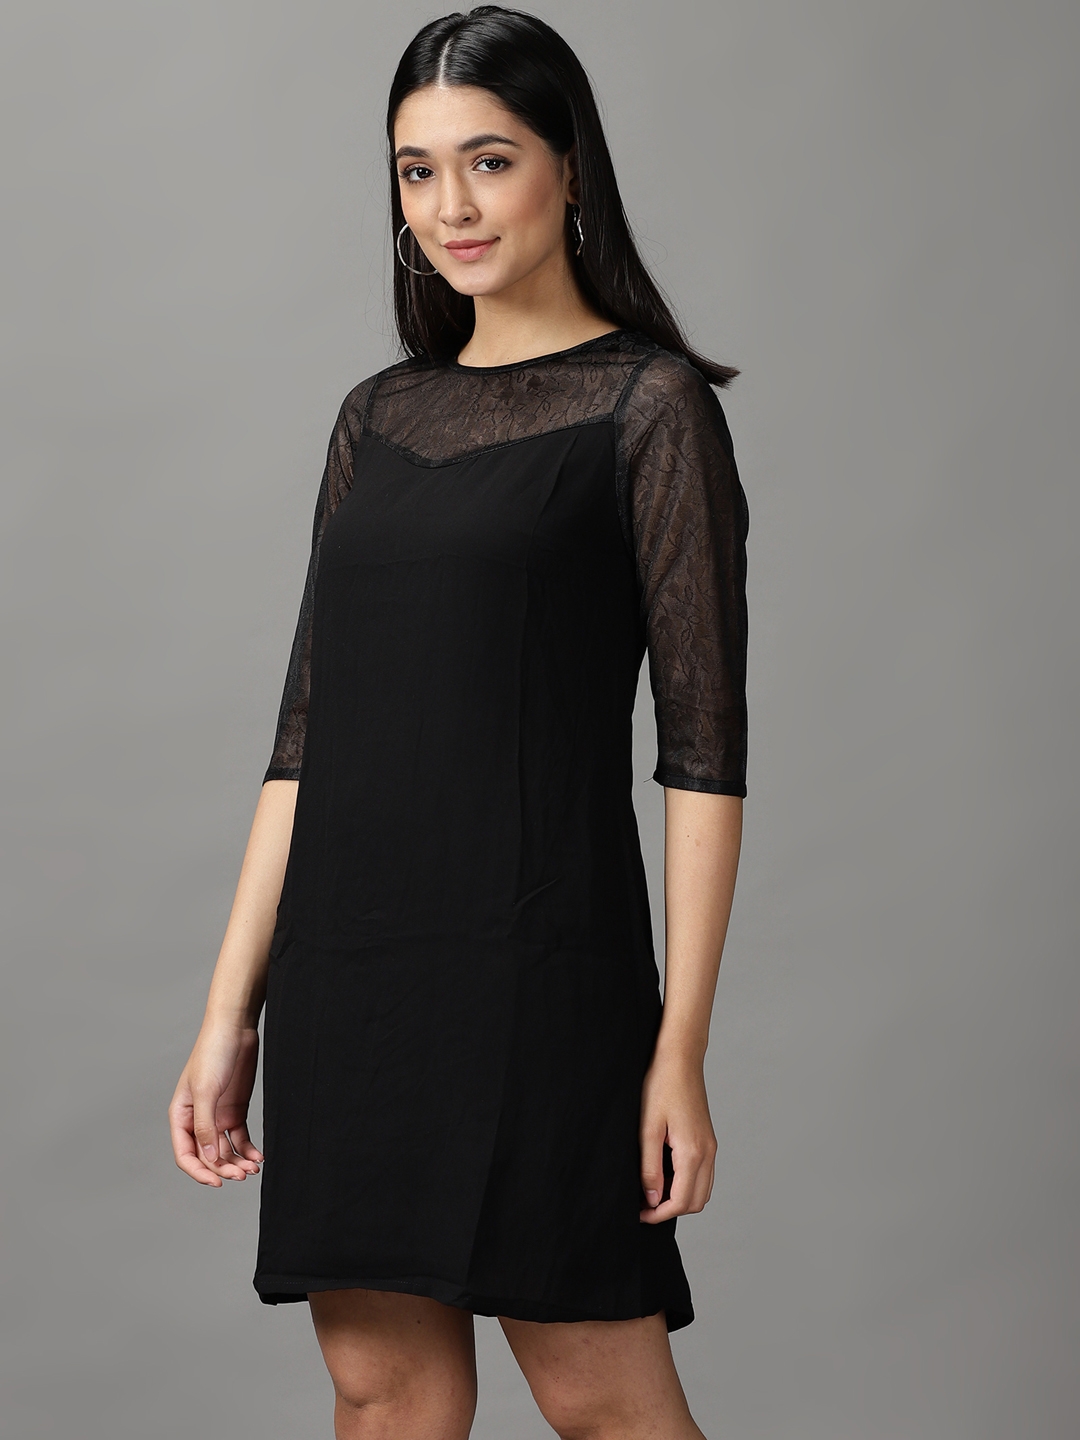 Black Three Quarter Sleeve A Line Dress